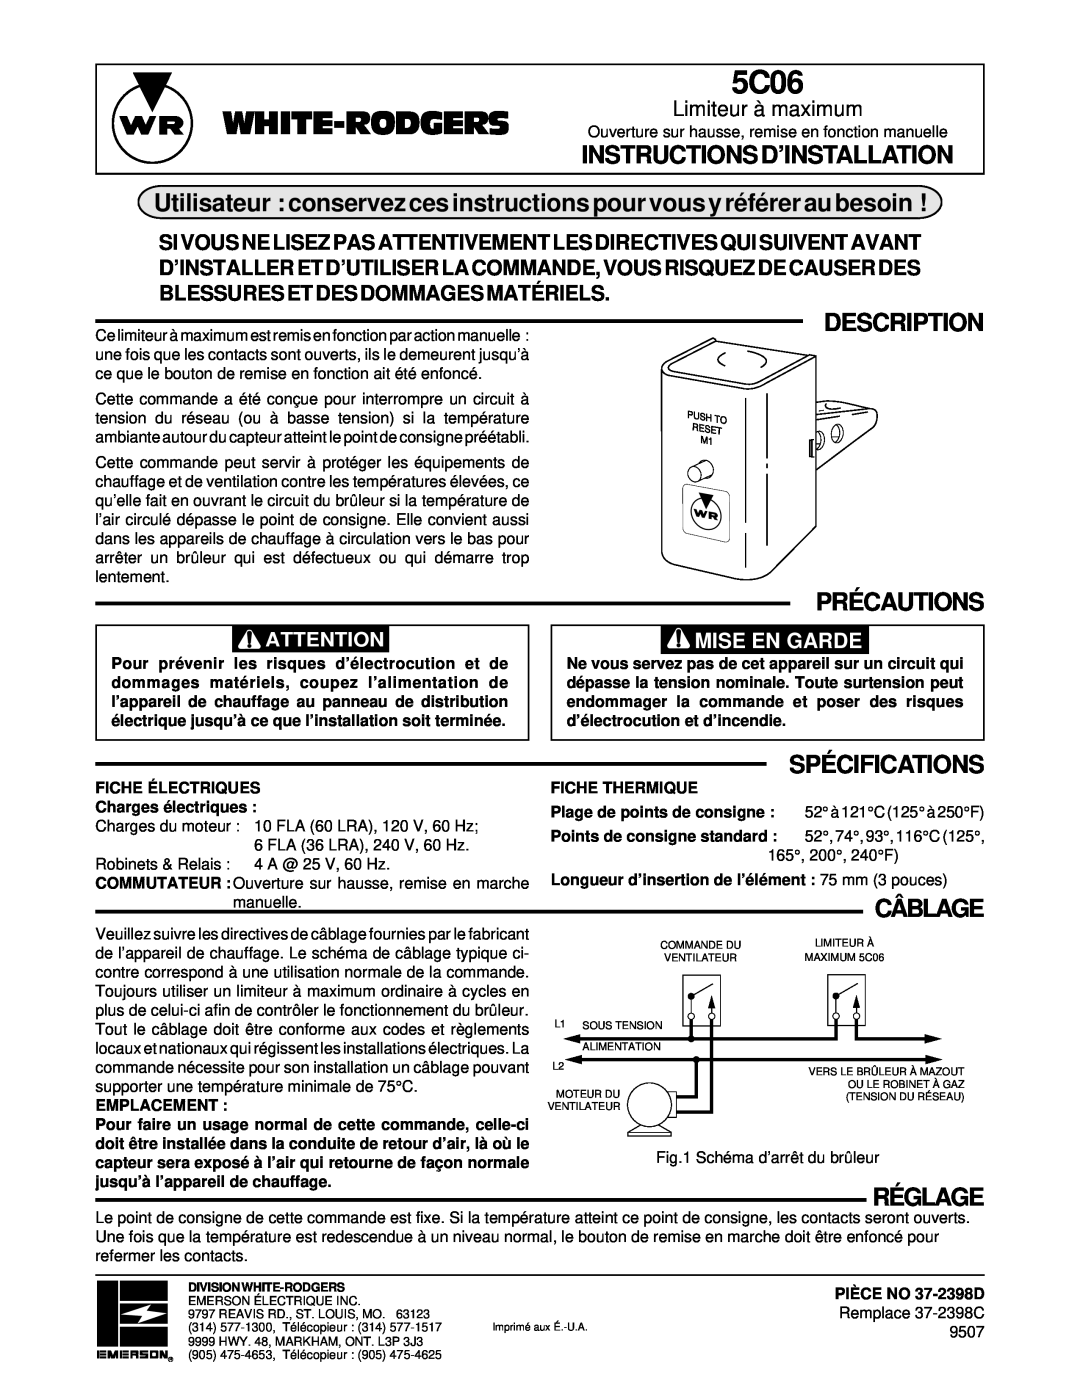 Emerson 5C06 Instructionsd’Installation, Utilisateur conservez ces instructions pour vous y référer au besoin, Description 